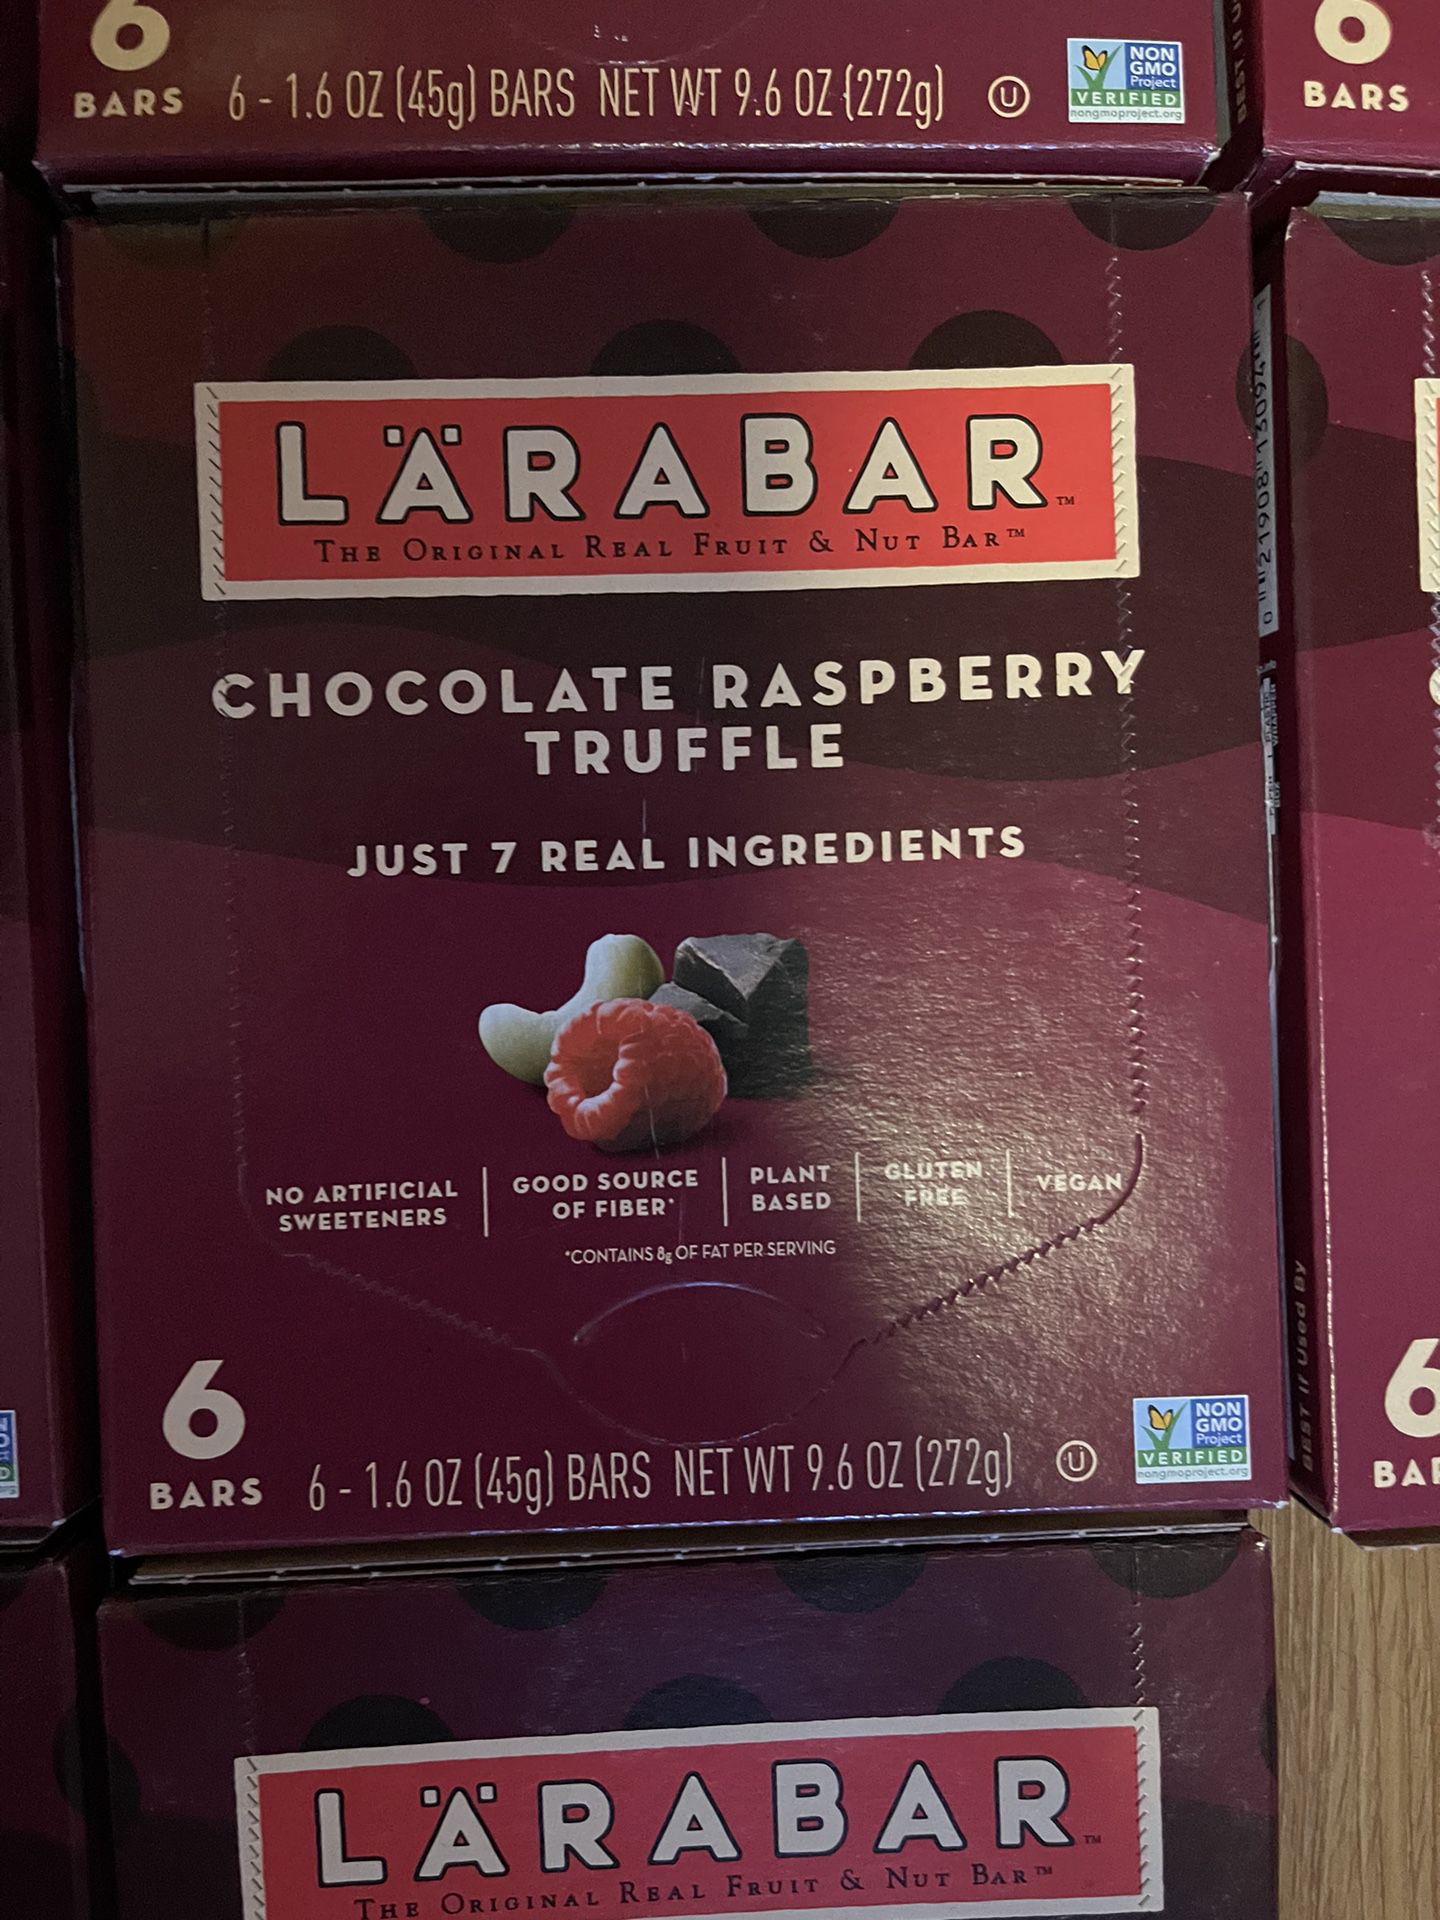 Lara bar Chocolate, Raspberry Truffle